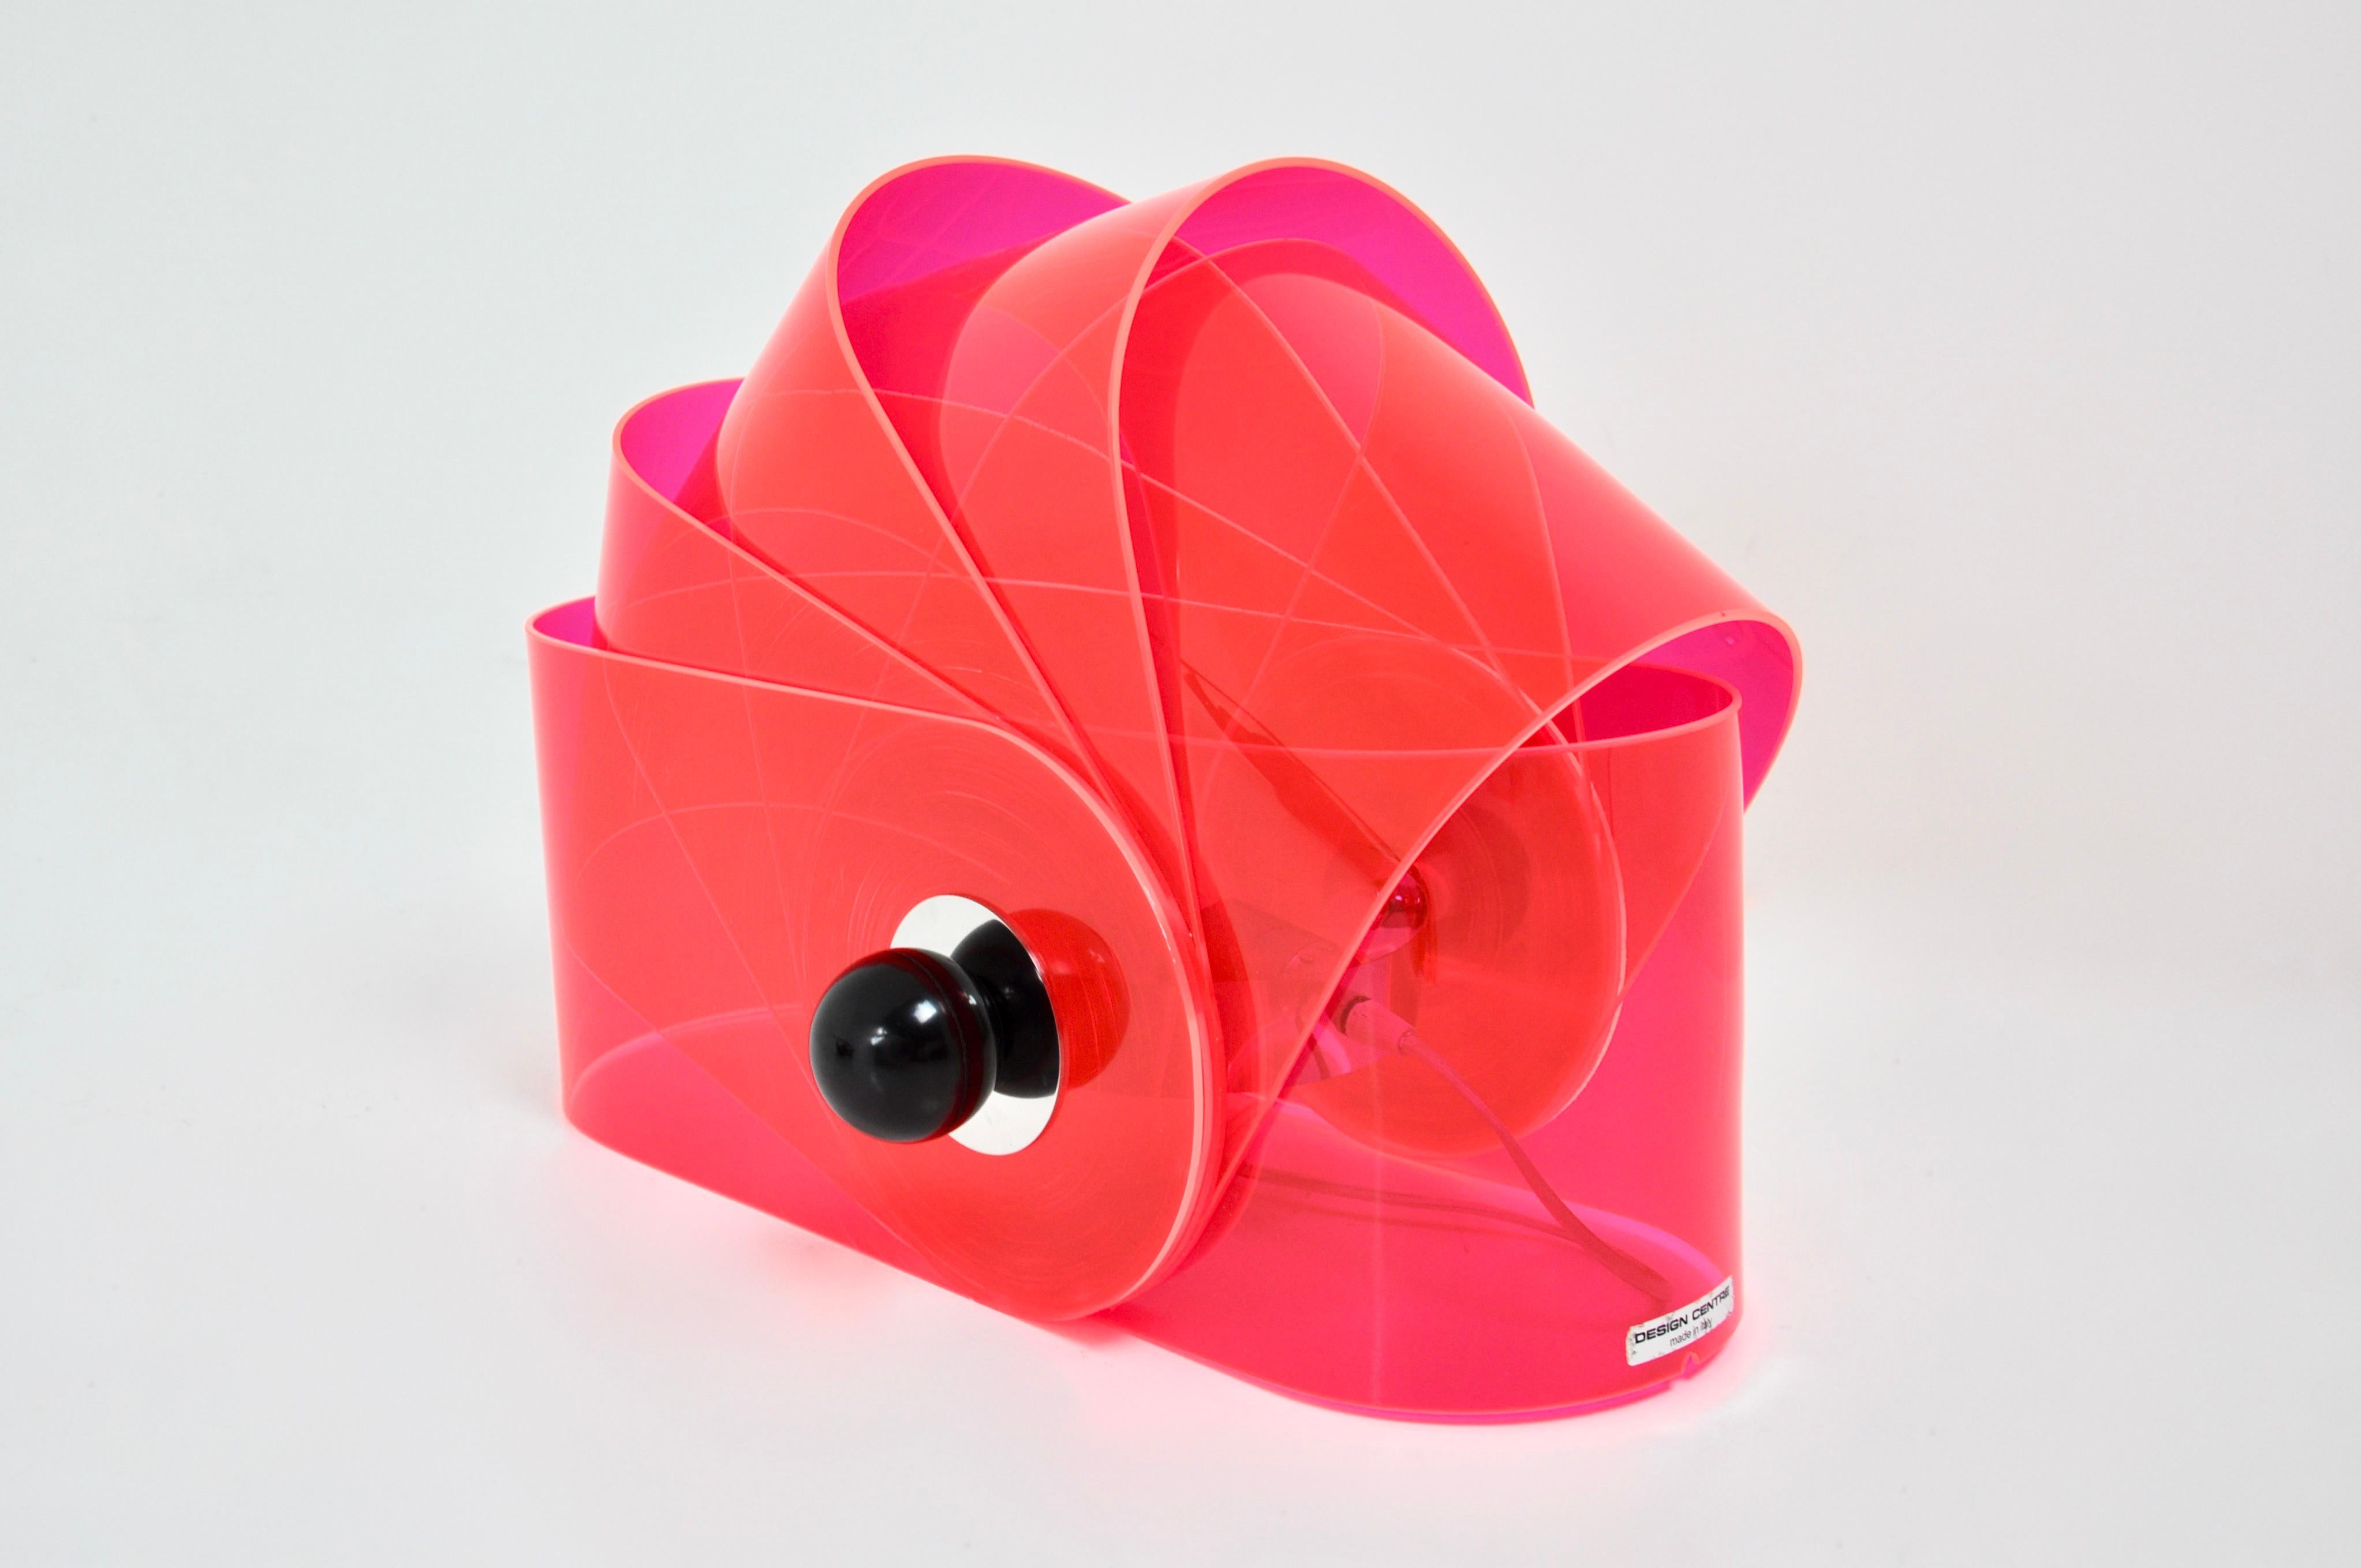 Italienische Lampe aus rosa Kunststoff von Superstudio. Modell Gherpe. Sie können die einzelnen Teile verschieben, um die gewünschte Form zu erhalten. Abnutzung durch die Zeit und das Alter der Lampe.